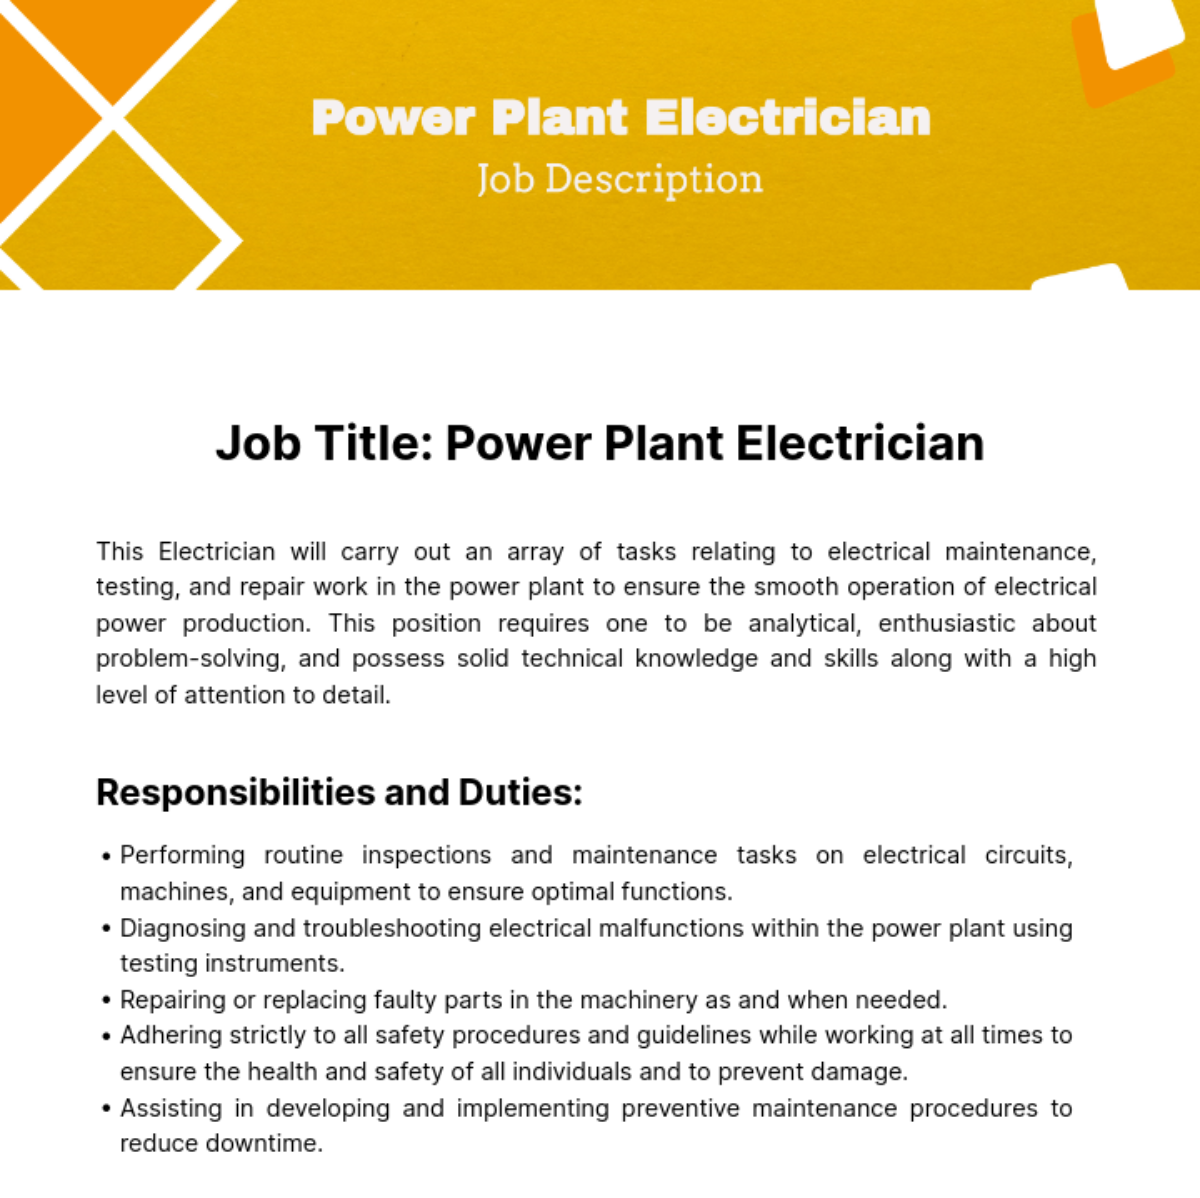 Power Plant Electrician Job Description Template